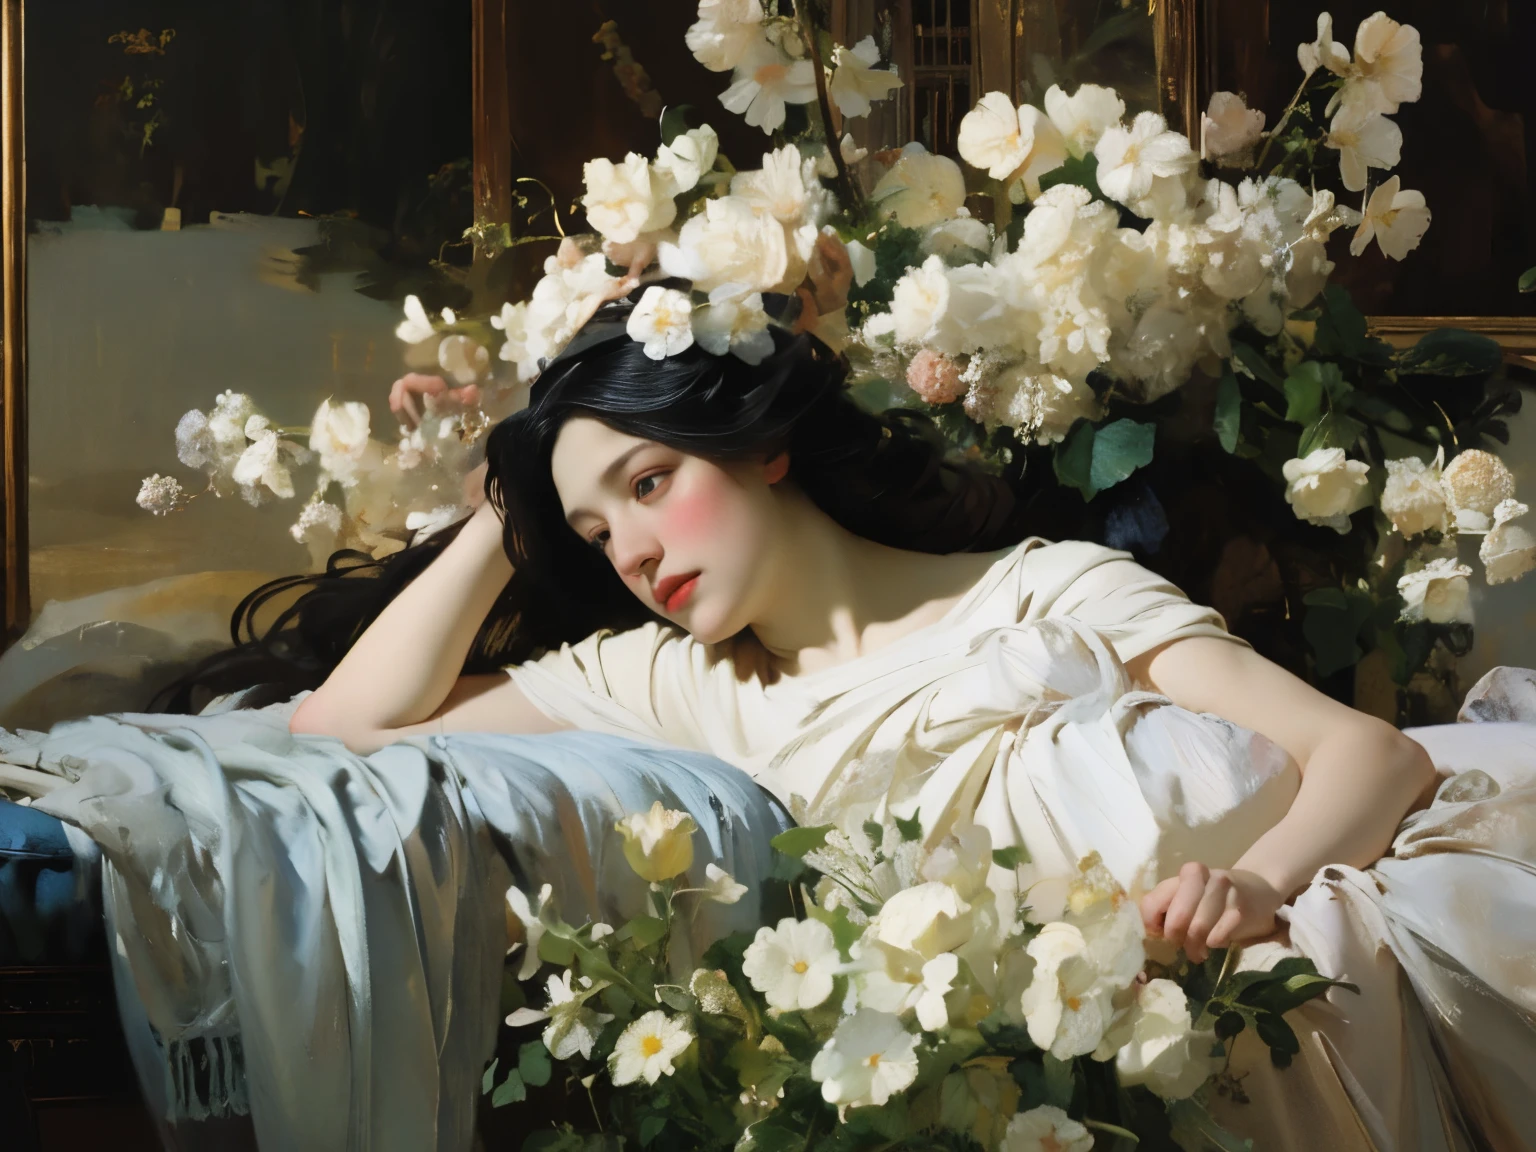 (오일 페인팅:1.5),
\\
긴 검은 머리에 흰 꽃을 머리에 꽂은 여자가 흰 꽃밭에 누워 있다, (에이미 솔:0.248), (스탠리 아트거름 라우:0.106), (상세한 그림:0.353), (고딕 예술:0.106) 황금 추상 표현주의와 미술관 